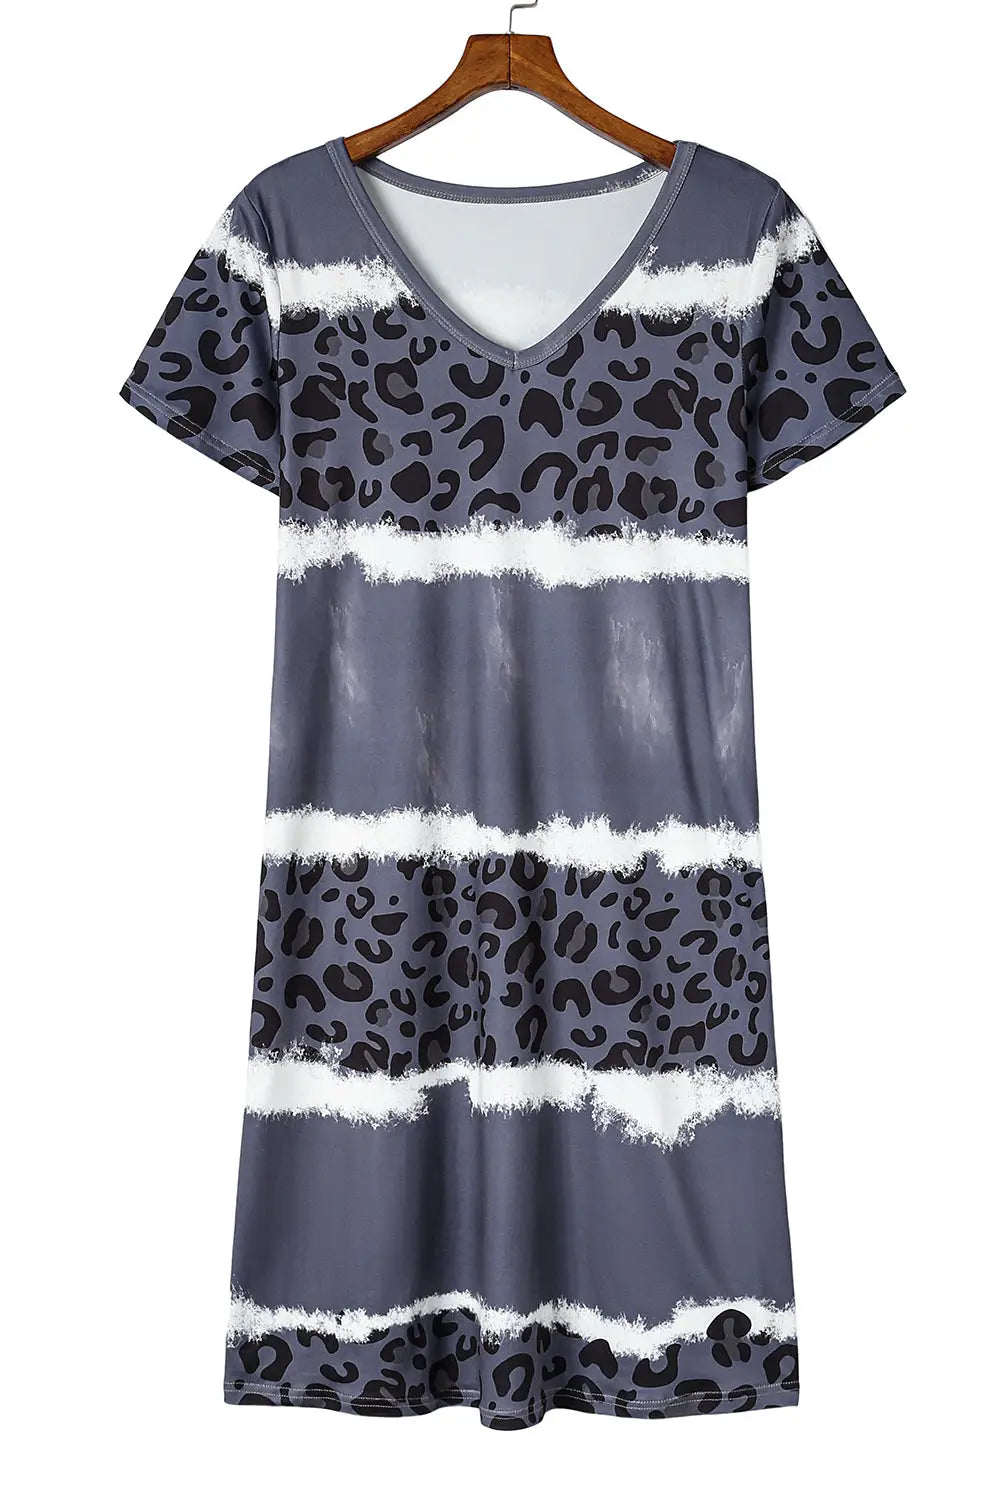 Gray leopard color block v-neck t-shirt dress - t-shirt dresses